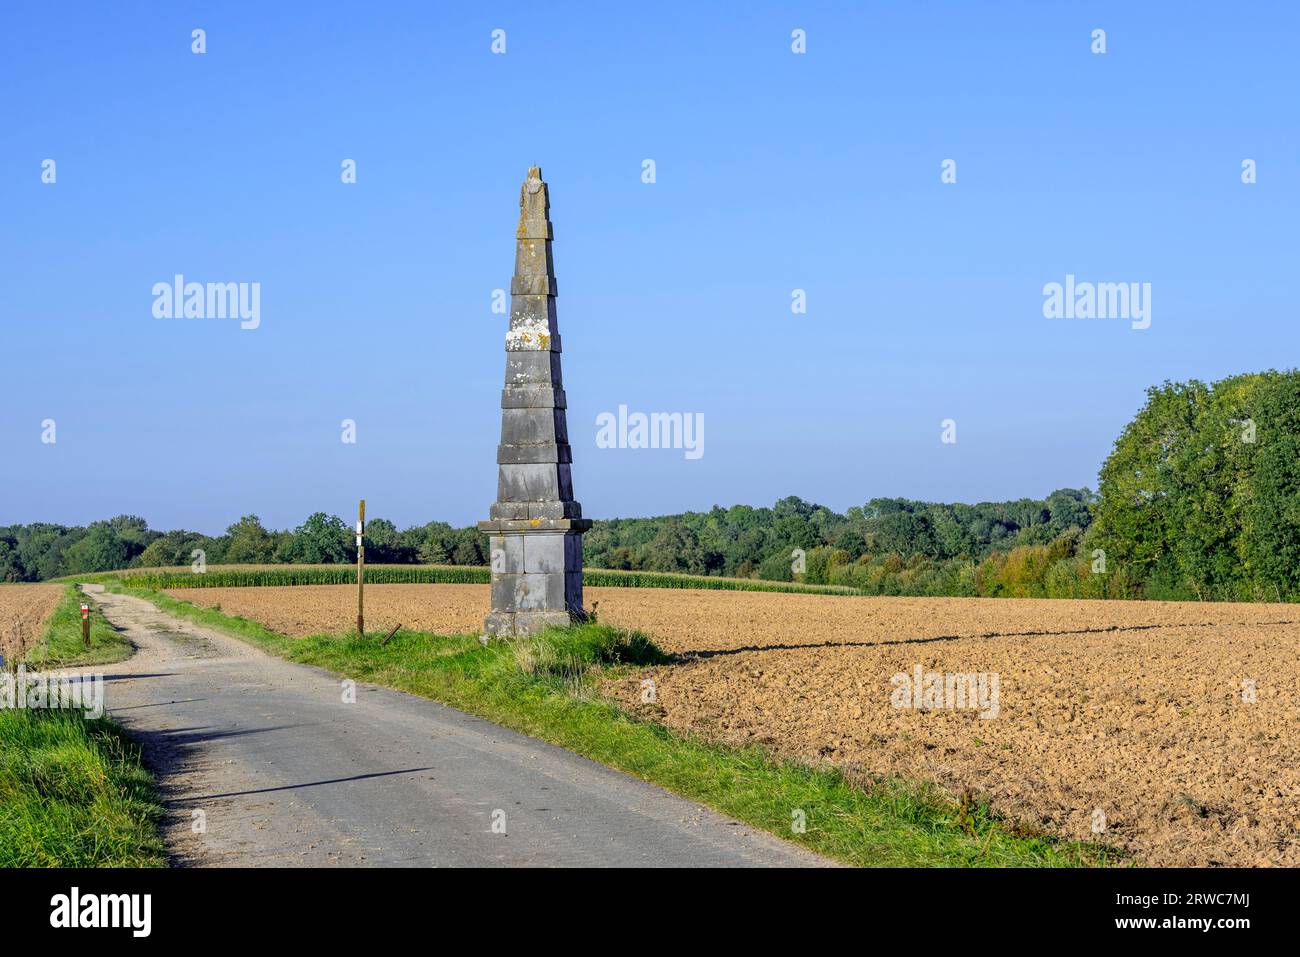 Pirámide del siglo XIX de Verlée, obelisco sin marcar, hito de la era napoleónica en los campos cerca de Havelange, provincia de Namur, Valonia, Bélgica Foto de stock